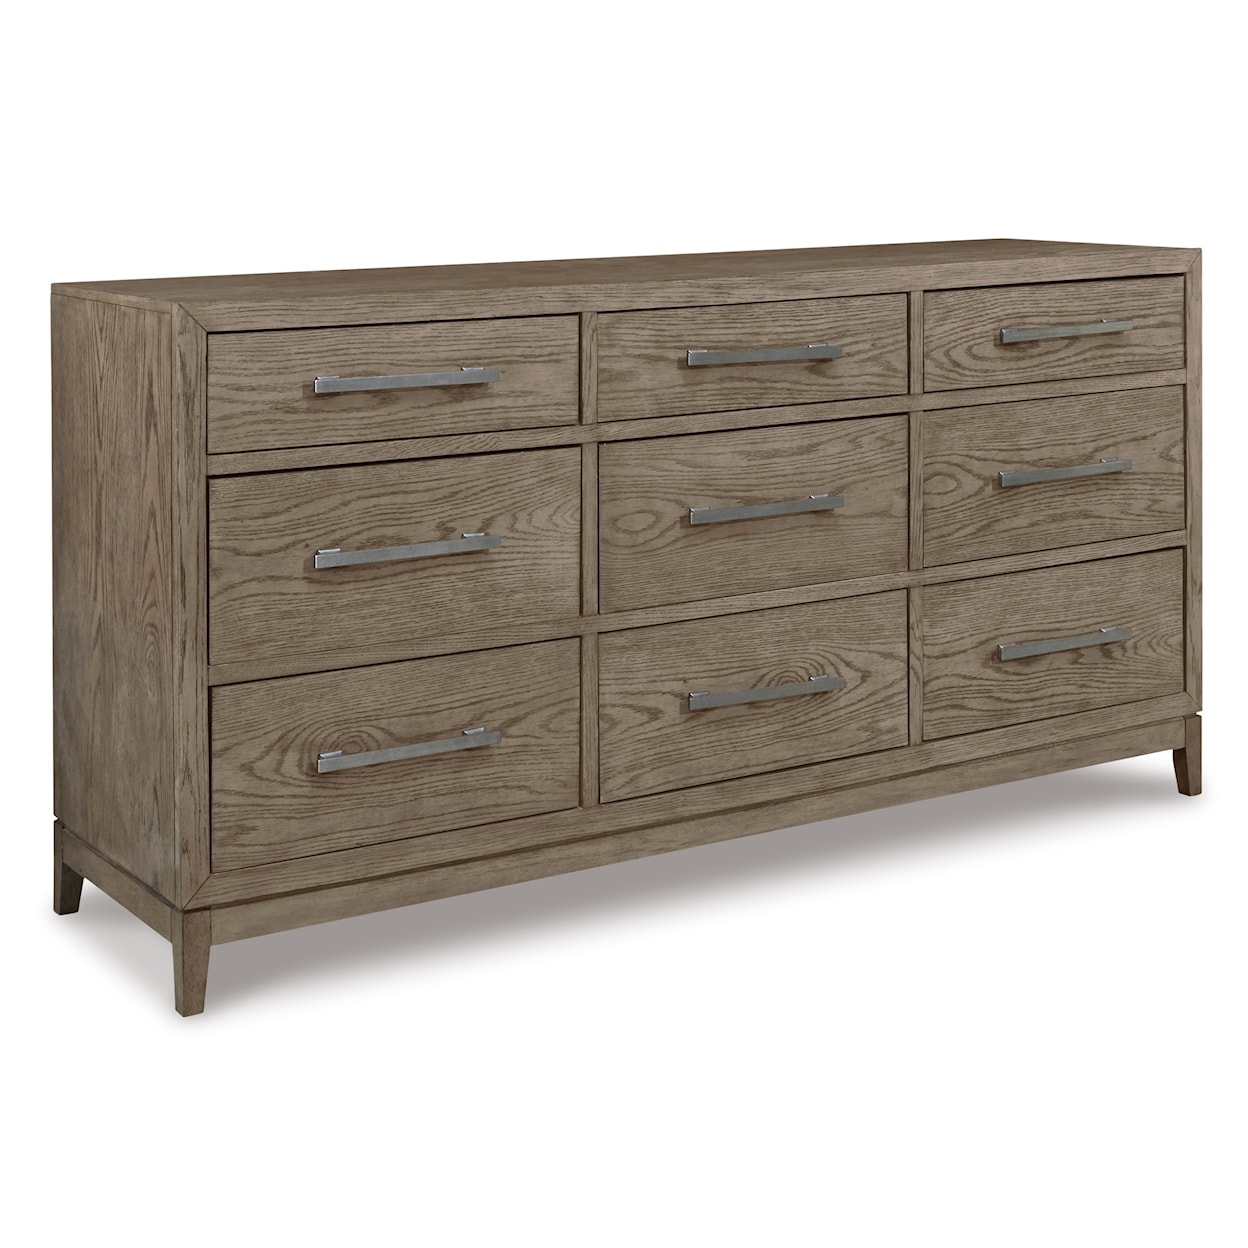 Ashley Furniture Signature Design Chrestner 9-Drawer Bedroom Dresser